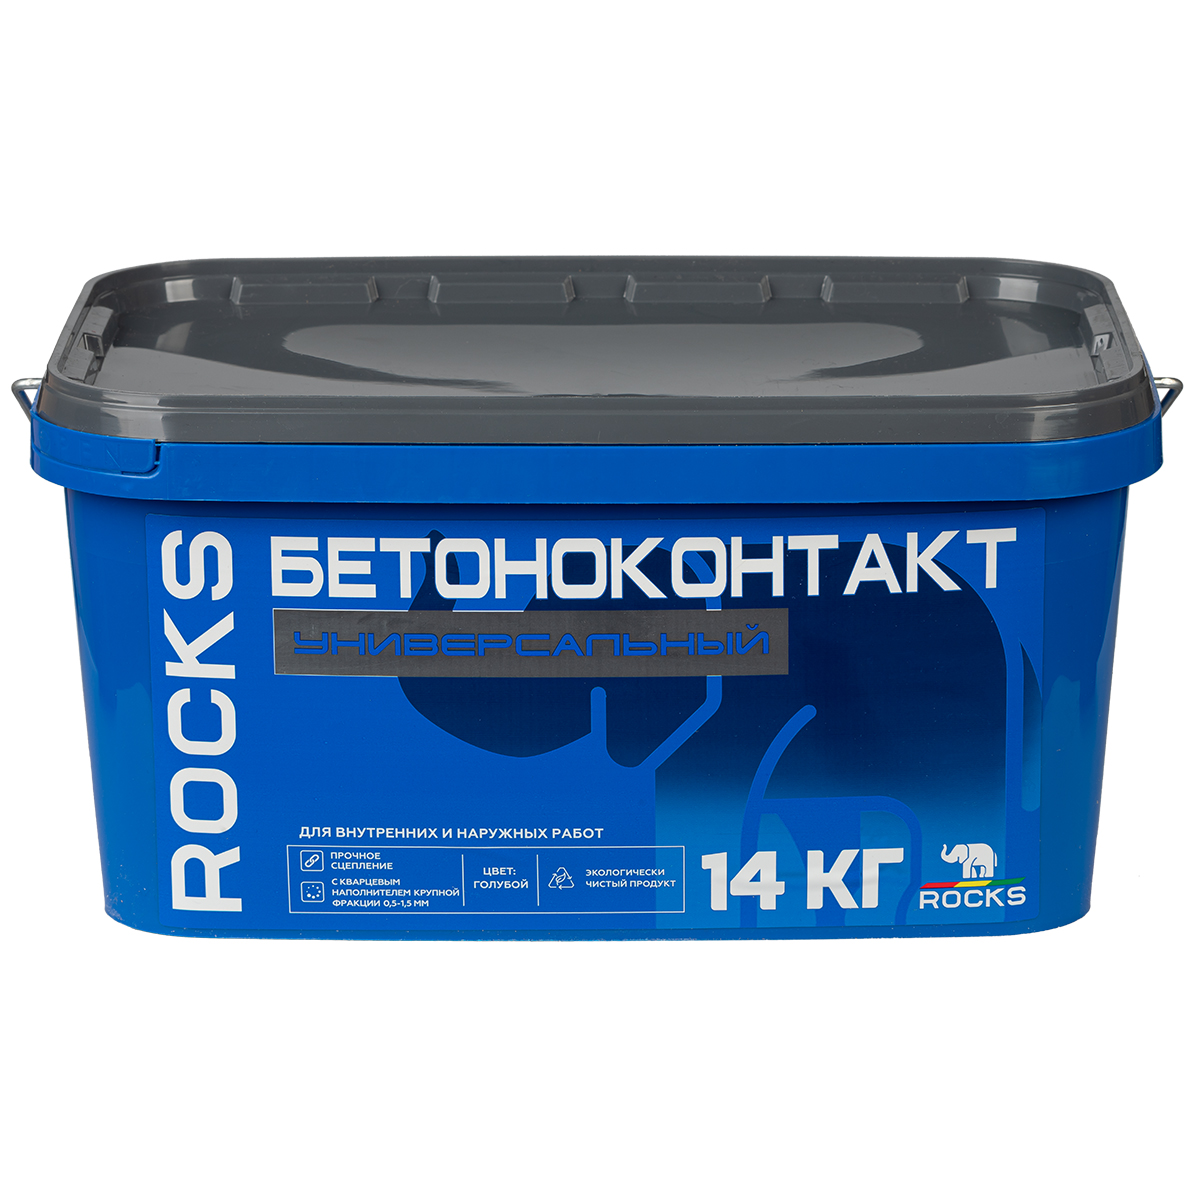 Бетоноконтакт универсальный, 14 кг, ROCKS